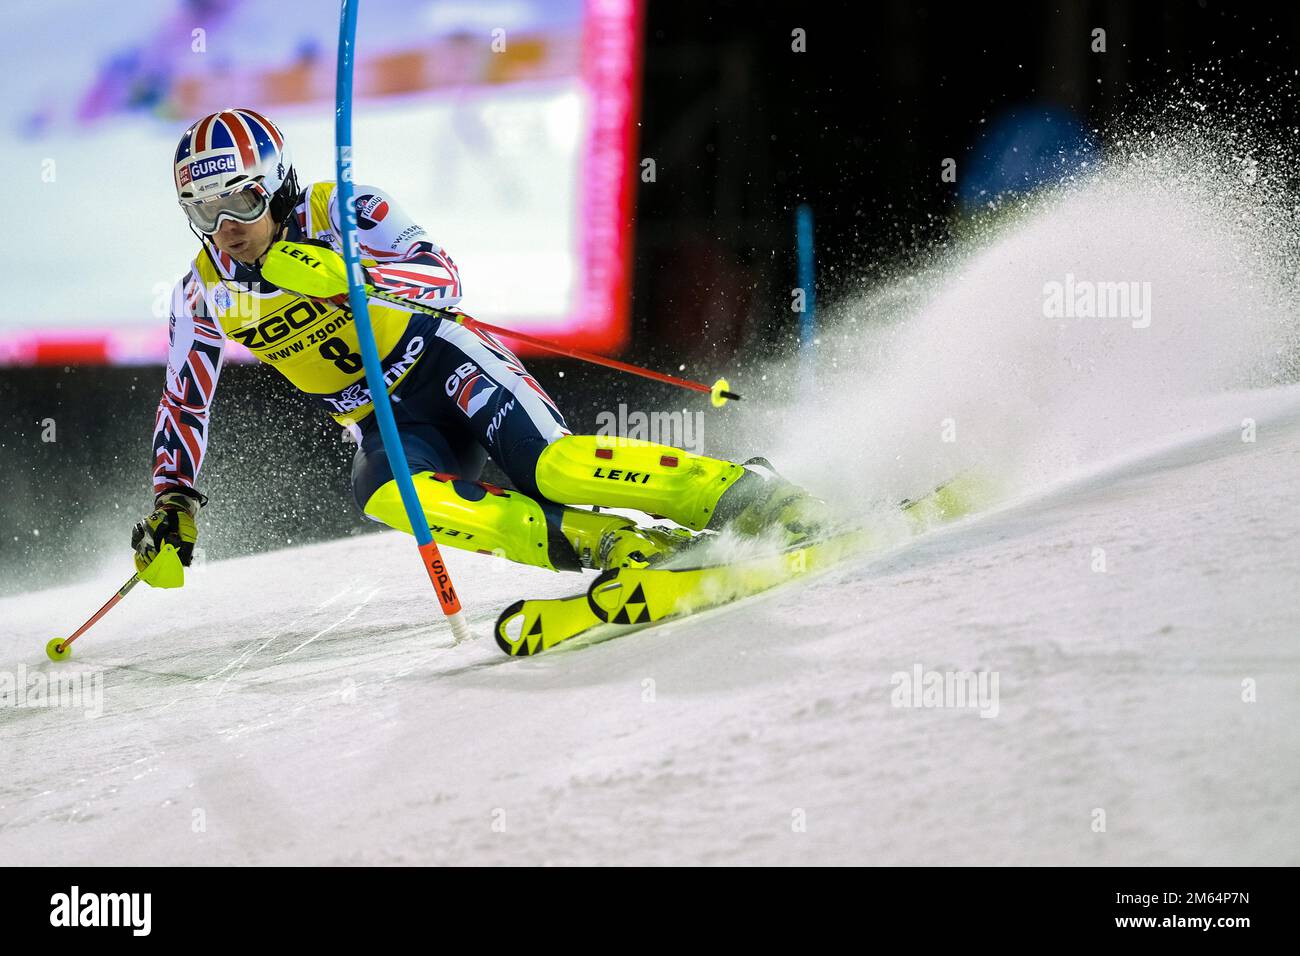 Audi FIS Alpine Ski World Cup - Men's Slalom on the 3Tre slope in Madonna di Campiglio - 22th December 2022, Madonna di Campiglio, Trento, Italy Stock Photo